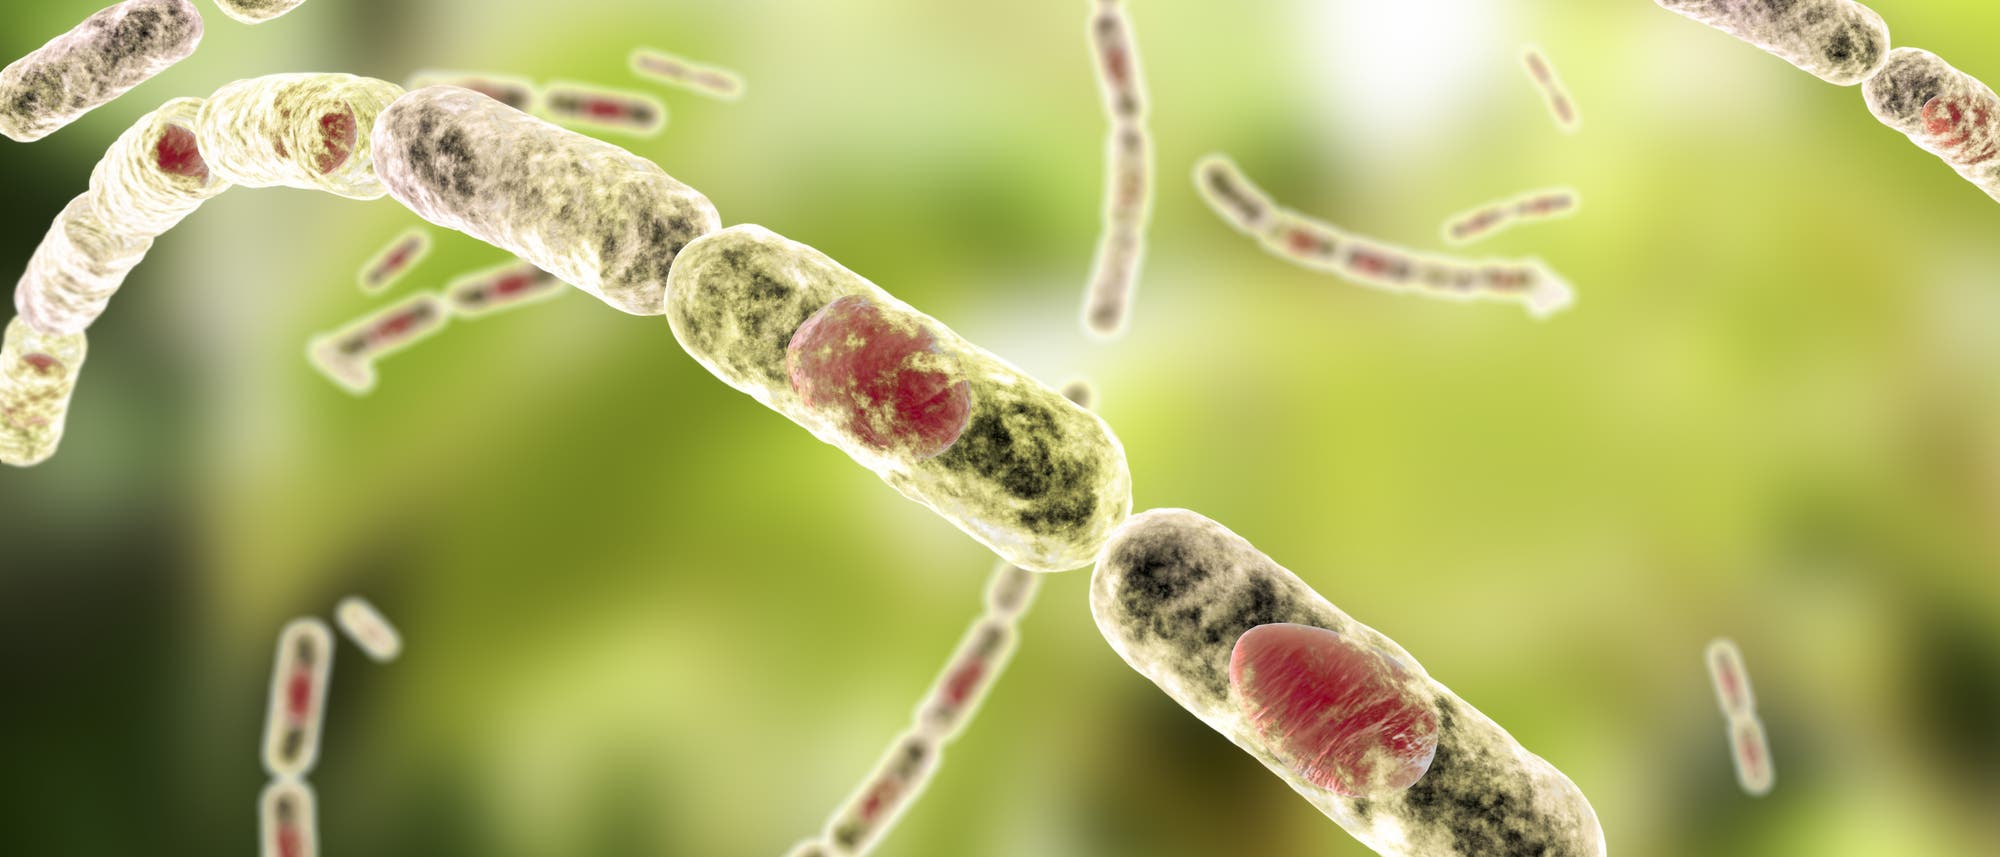 Künstlerische Darstellung von Bacillus anthracis. Aus einzelnen Zellen bestehende Fäden vor ominösem grünen Hintergrund